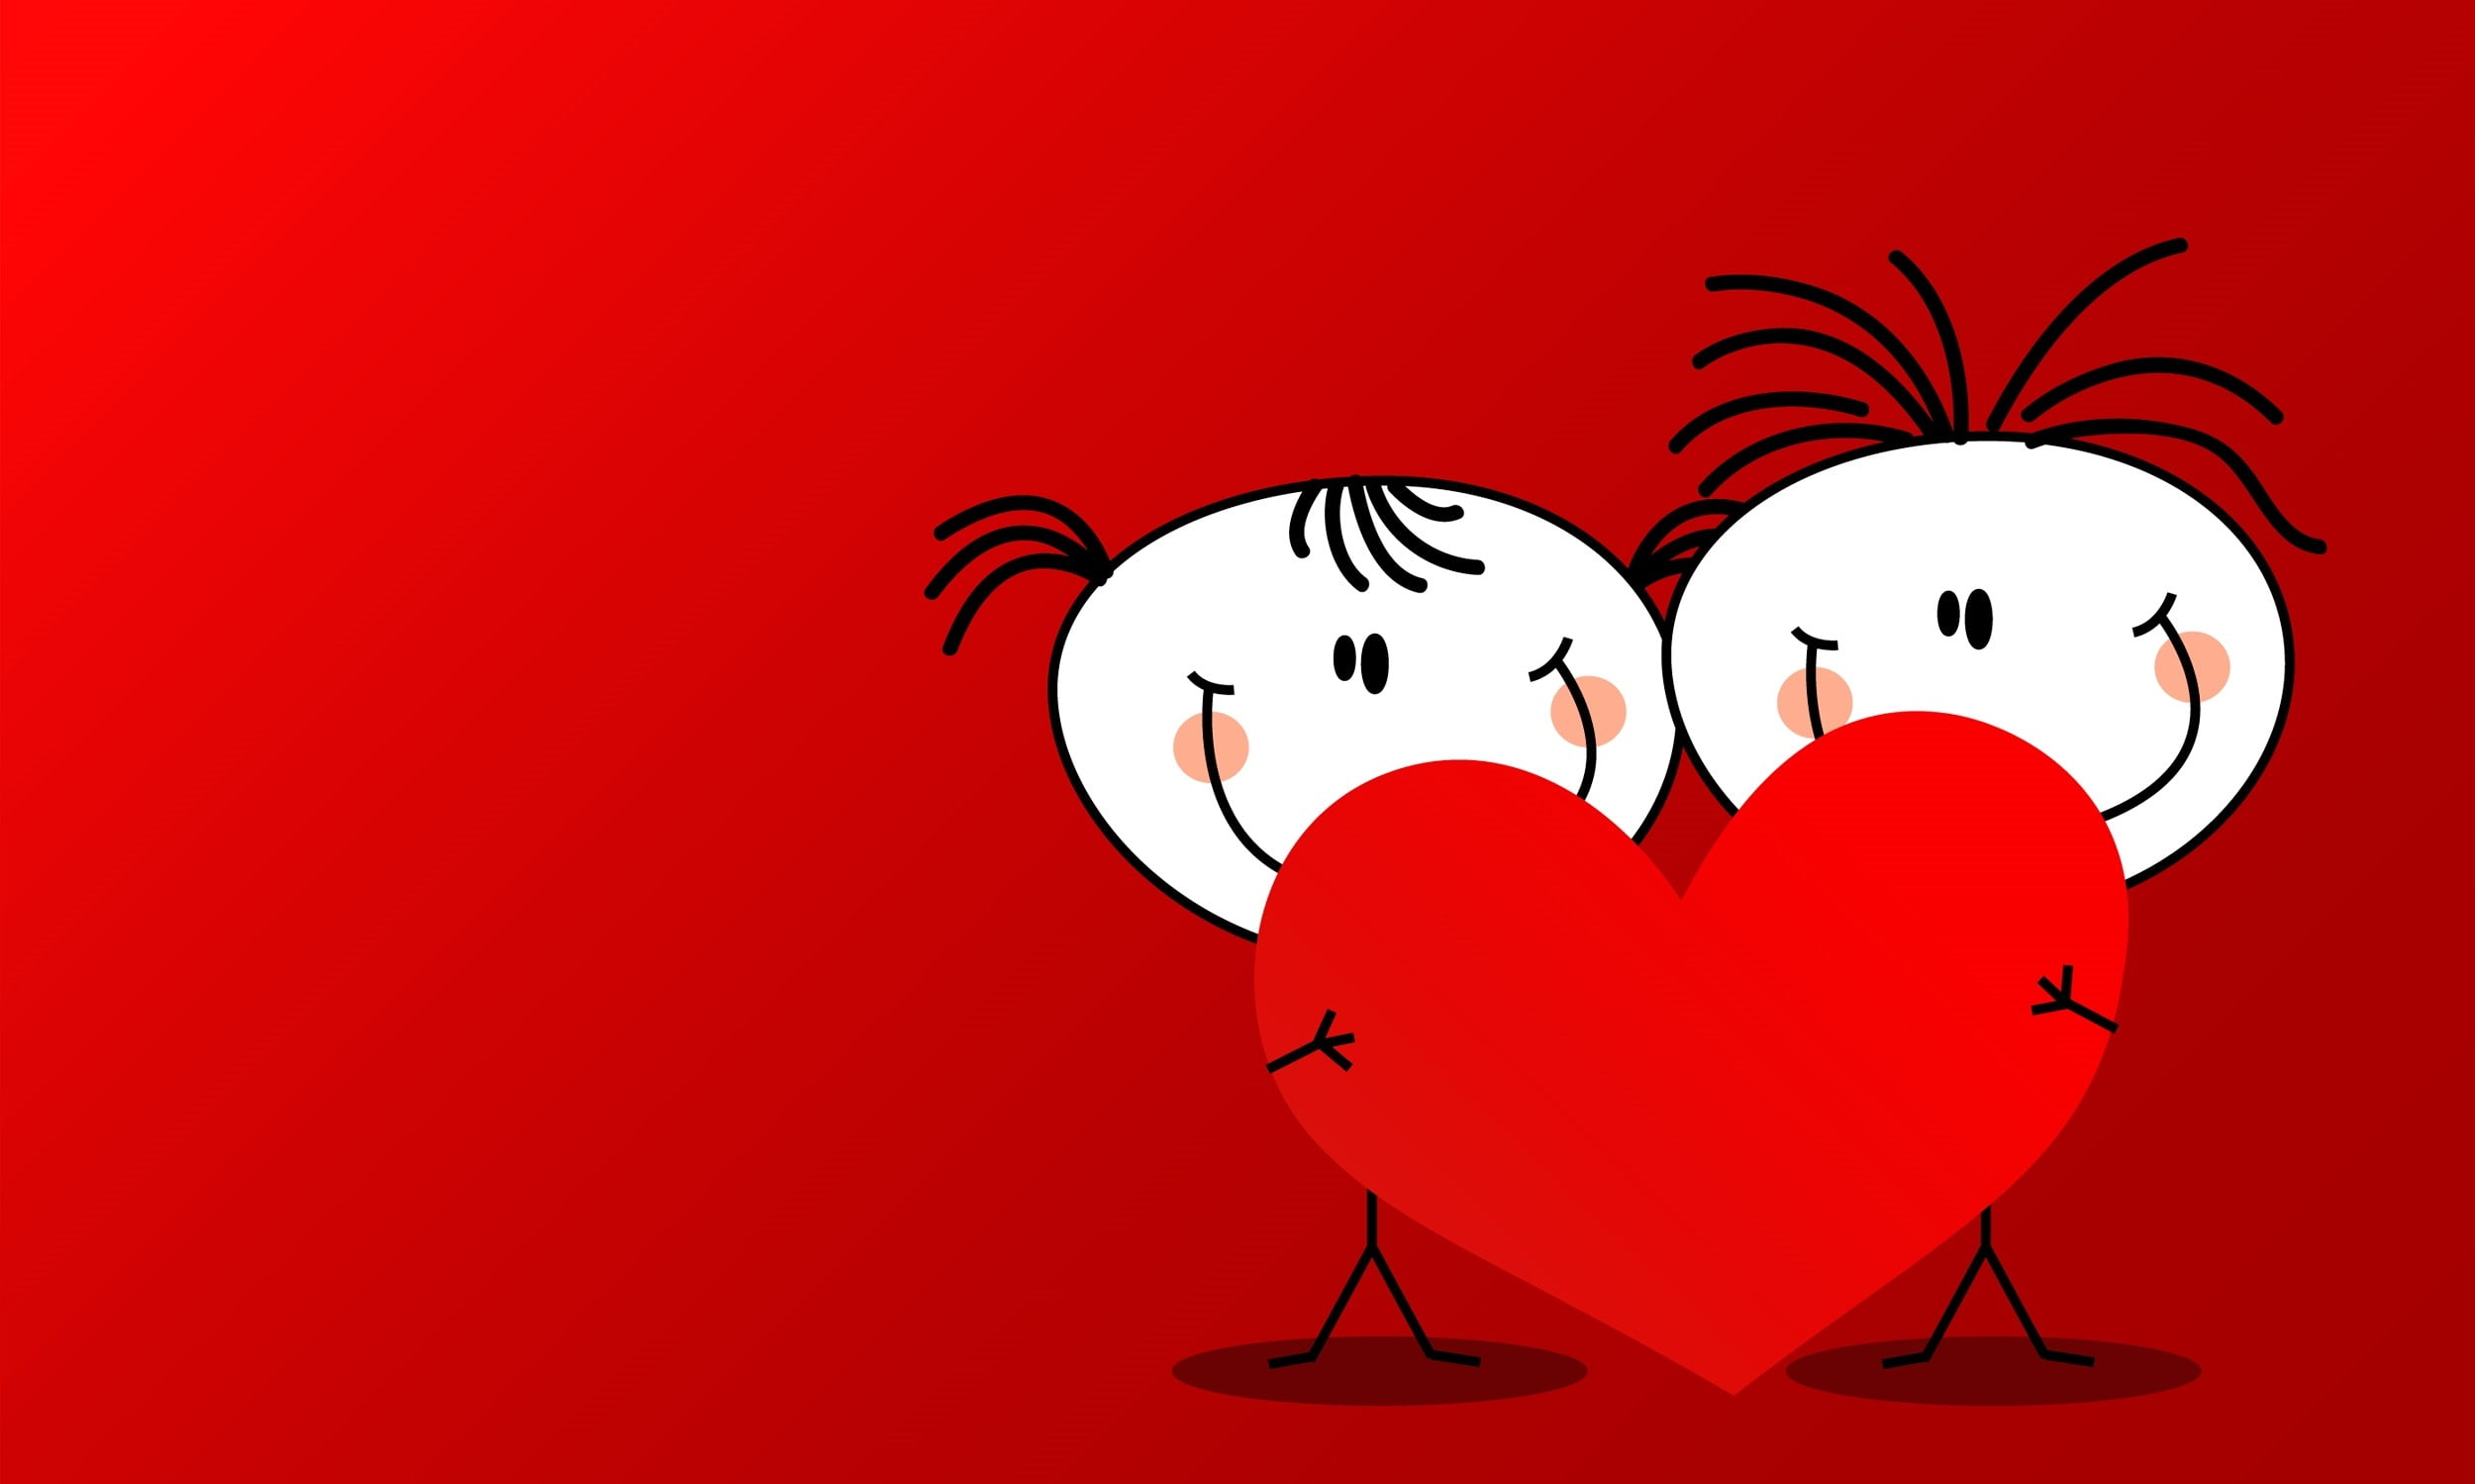 Heart, valentines day, boy, girl, men, Valentine's Day